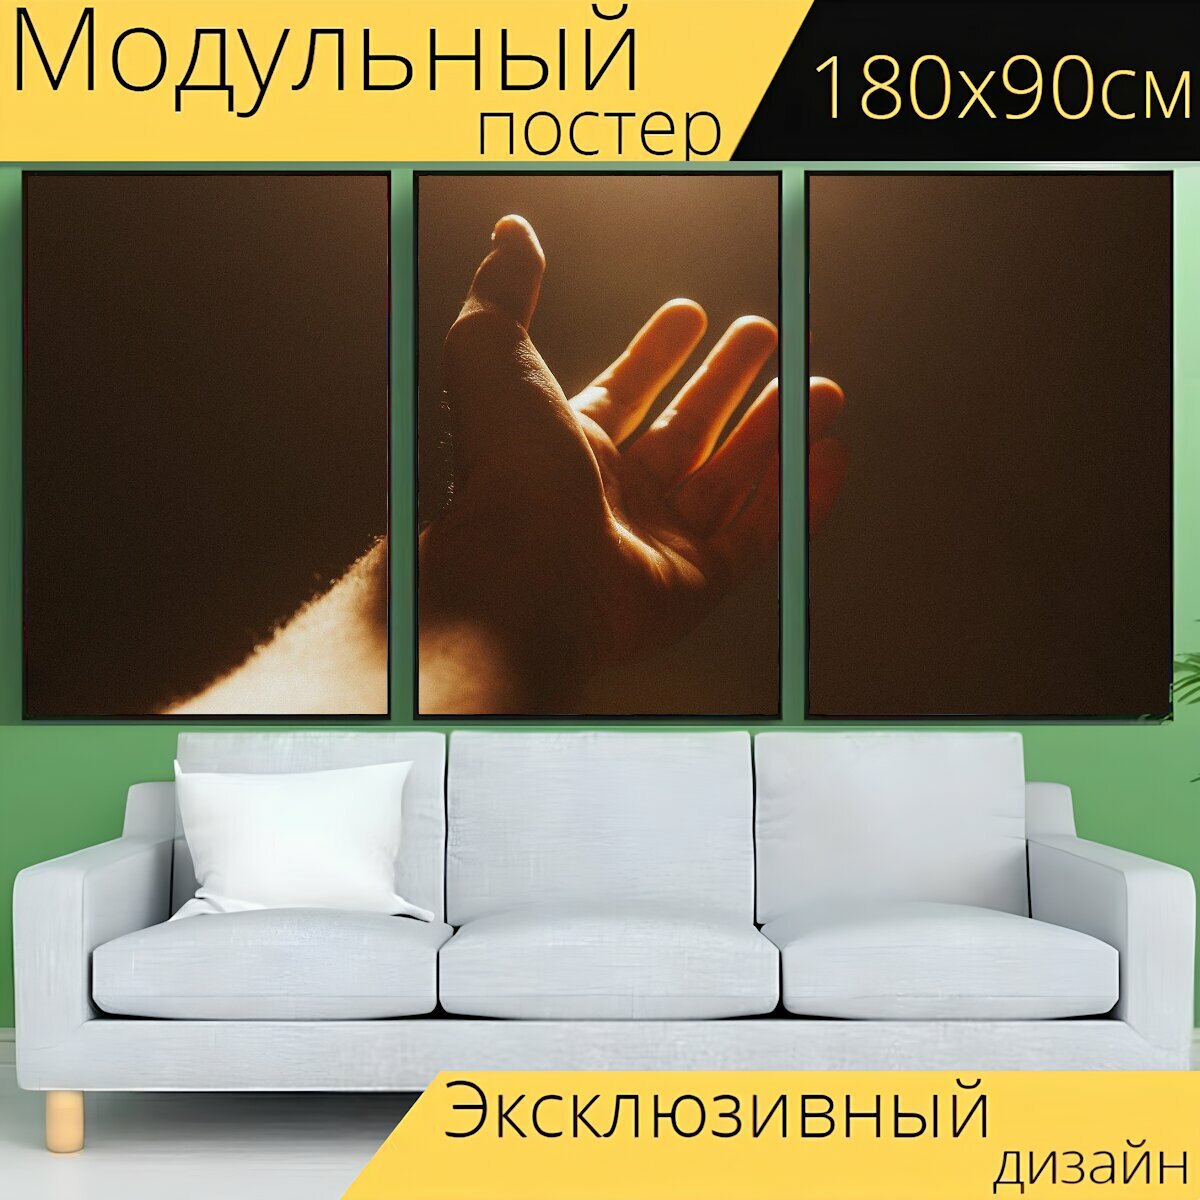 Модульный постер "Рука, руки, свобода" 180 x 90 см. для интерьера